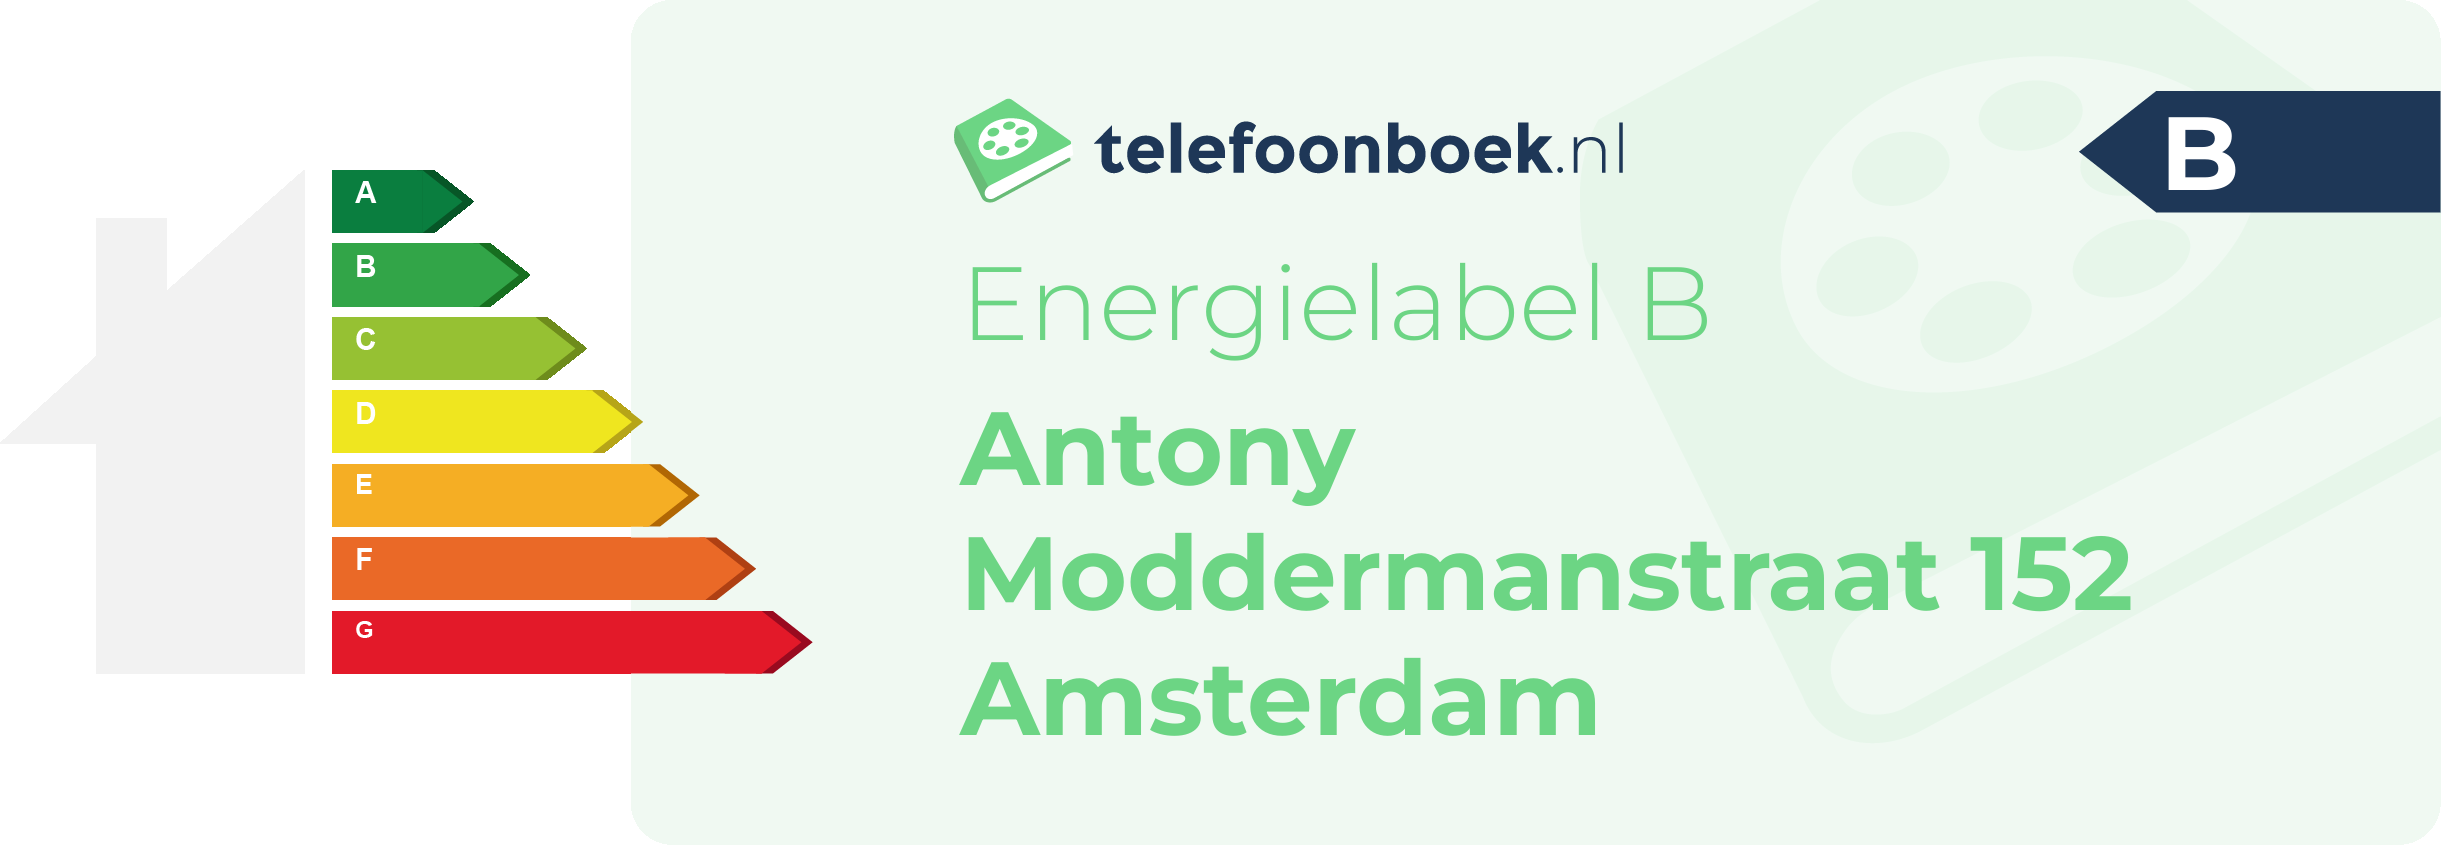 Energielabel Antony Moddermanstraat 152 Amsterdam